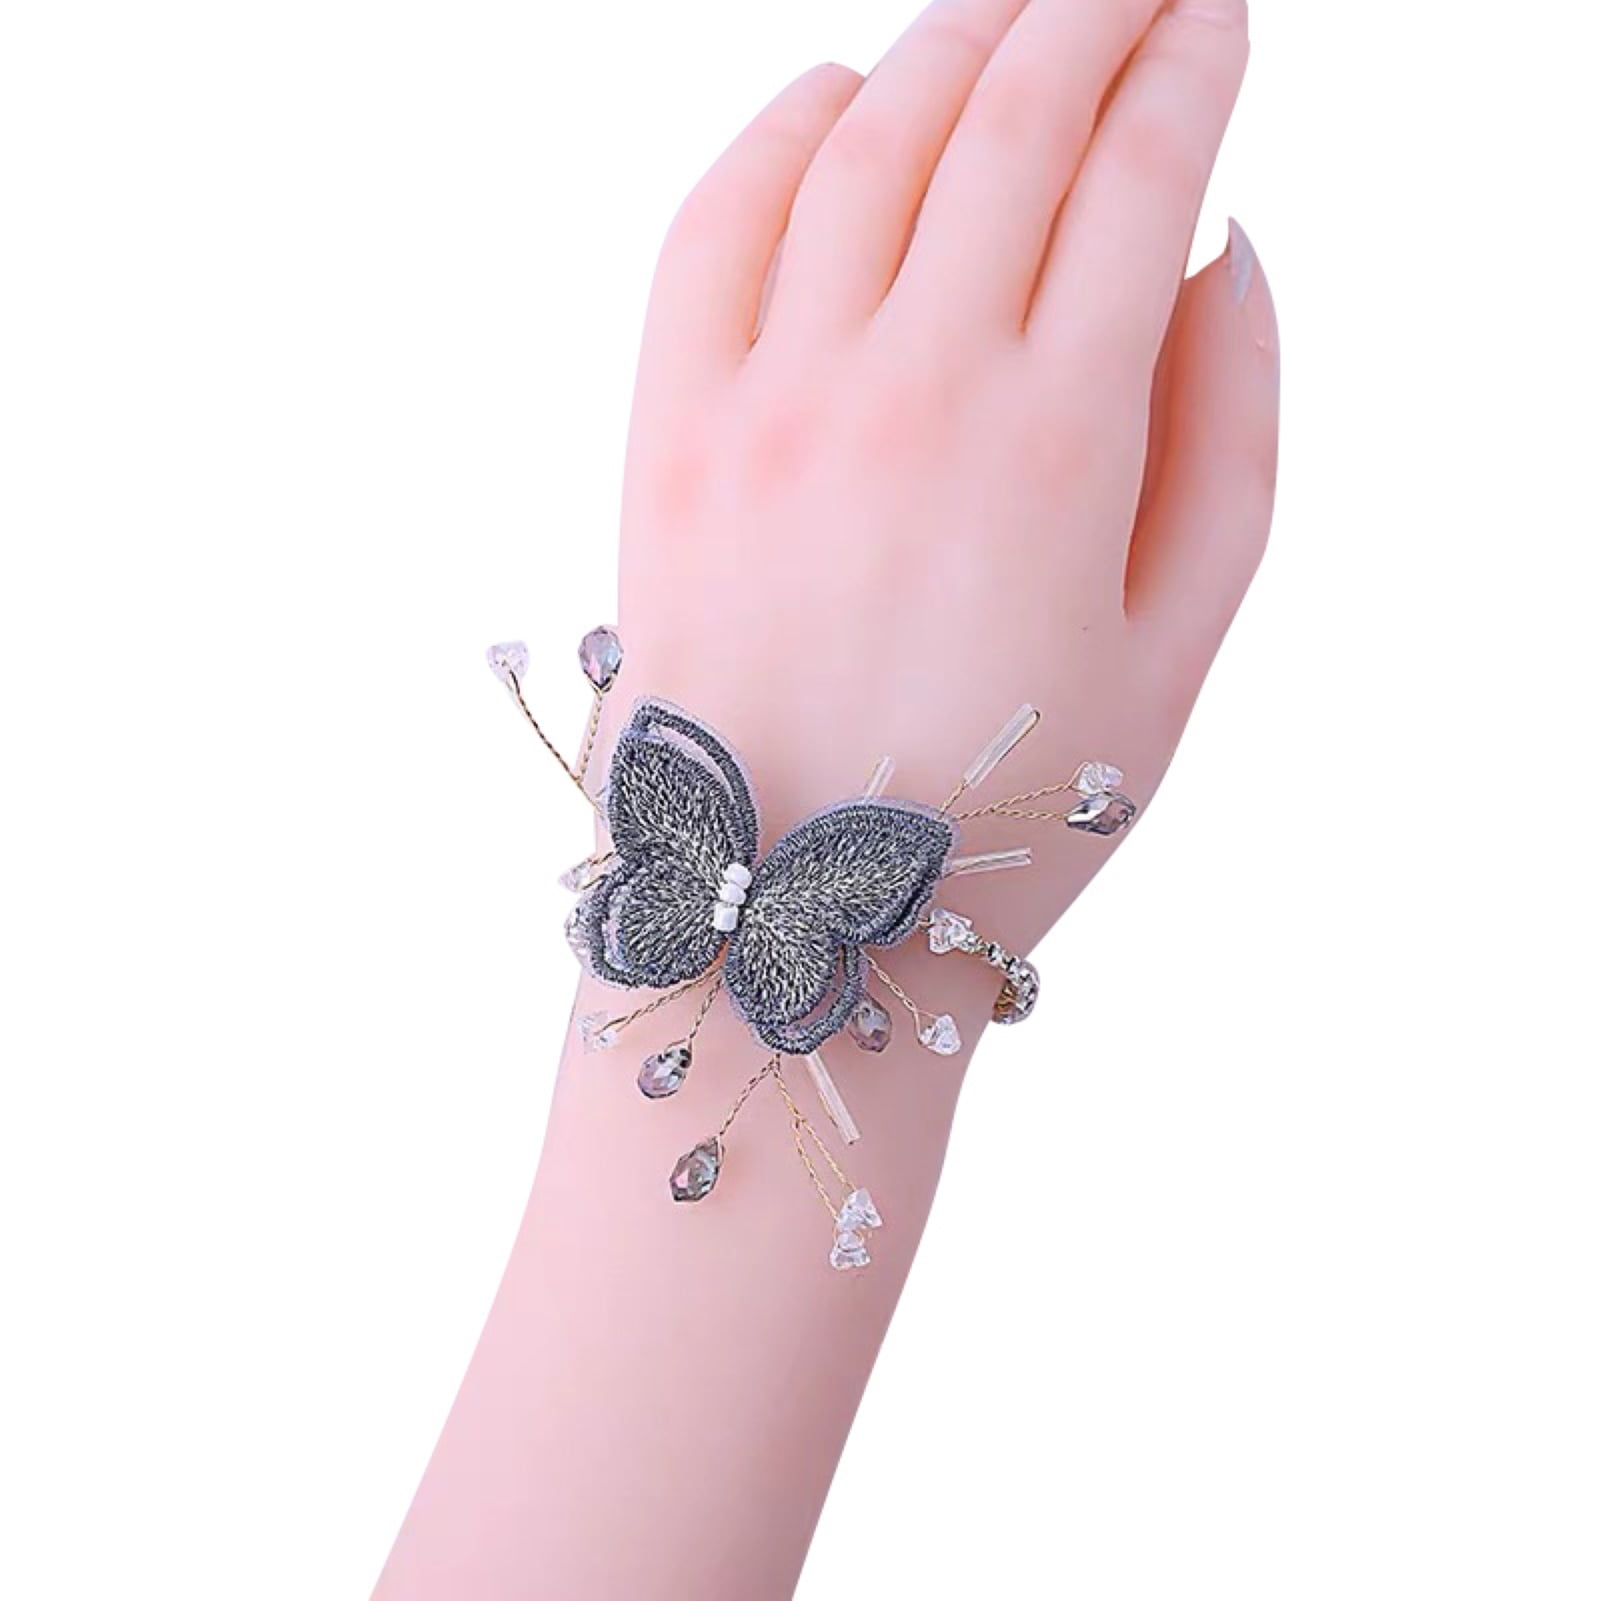 Small Purple Bracelet Flower Tattoo | Wrist bracelet tattoo, Flower wrist  tattoos, Wrap around wrist tattoos